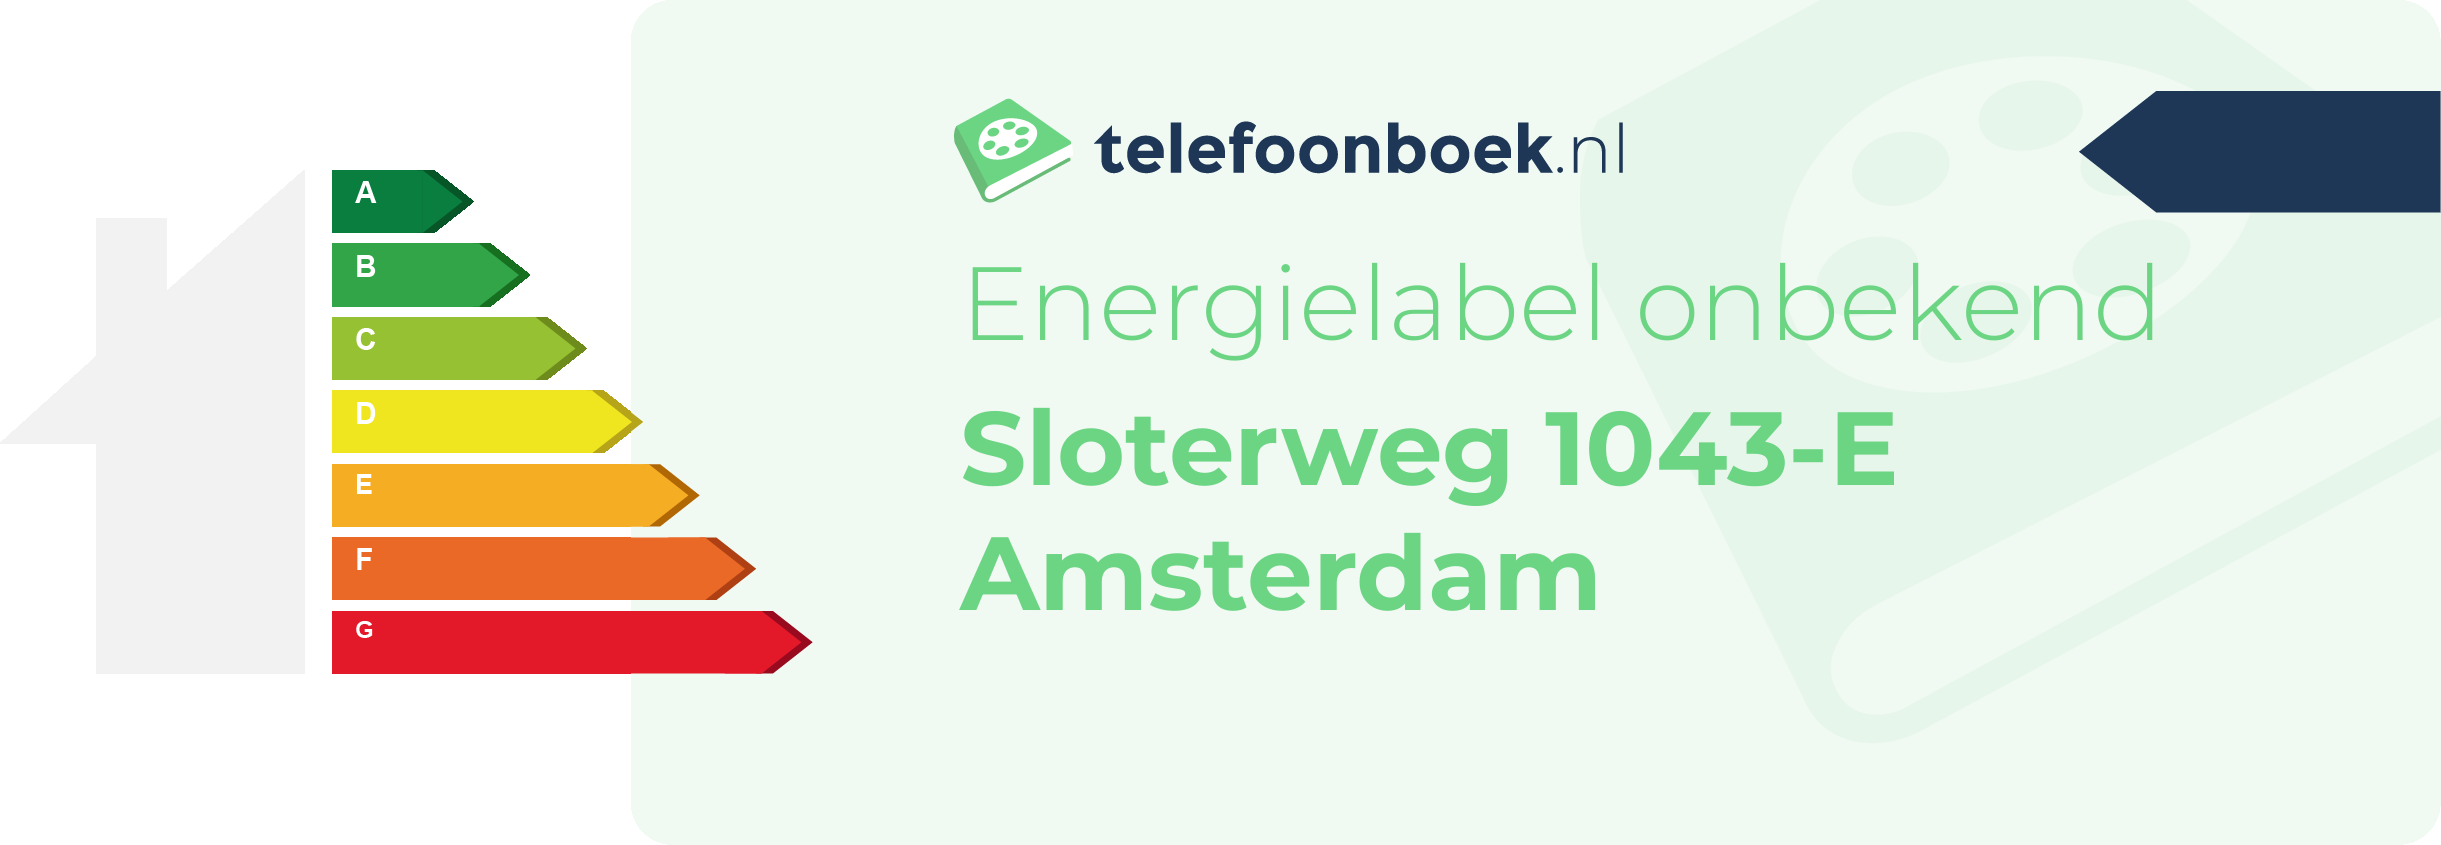 Energielabel Sloterweg 1043-E Amsterdam